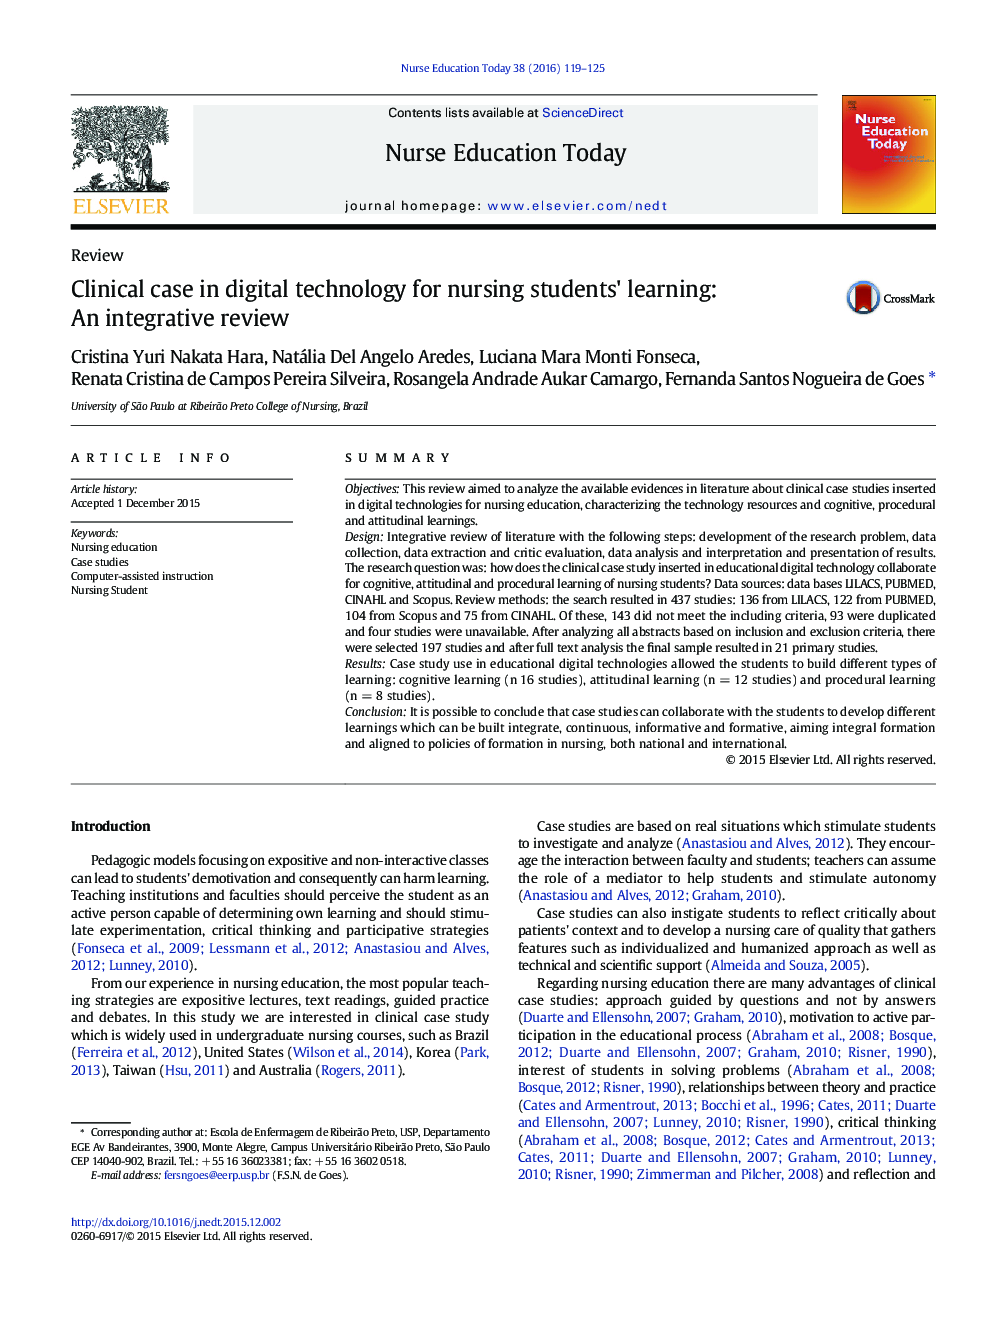 مورد بالینی در فن آوری دیجیتال برای یادگیری دانشجویان پرستاری: یک بررسی یکپارچه